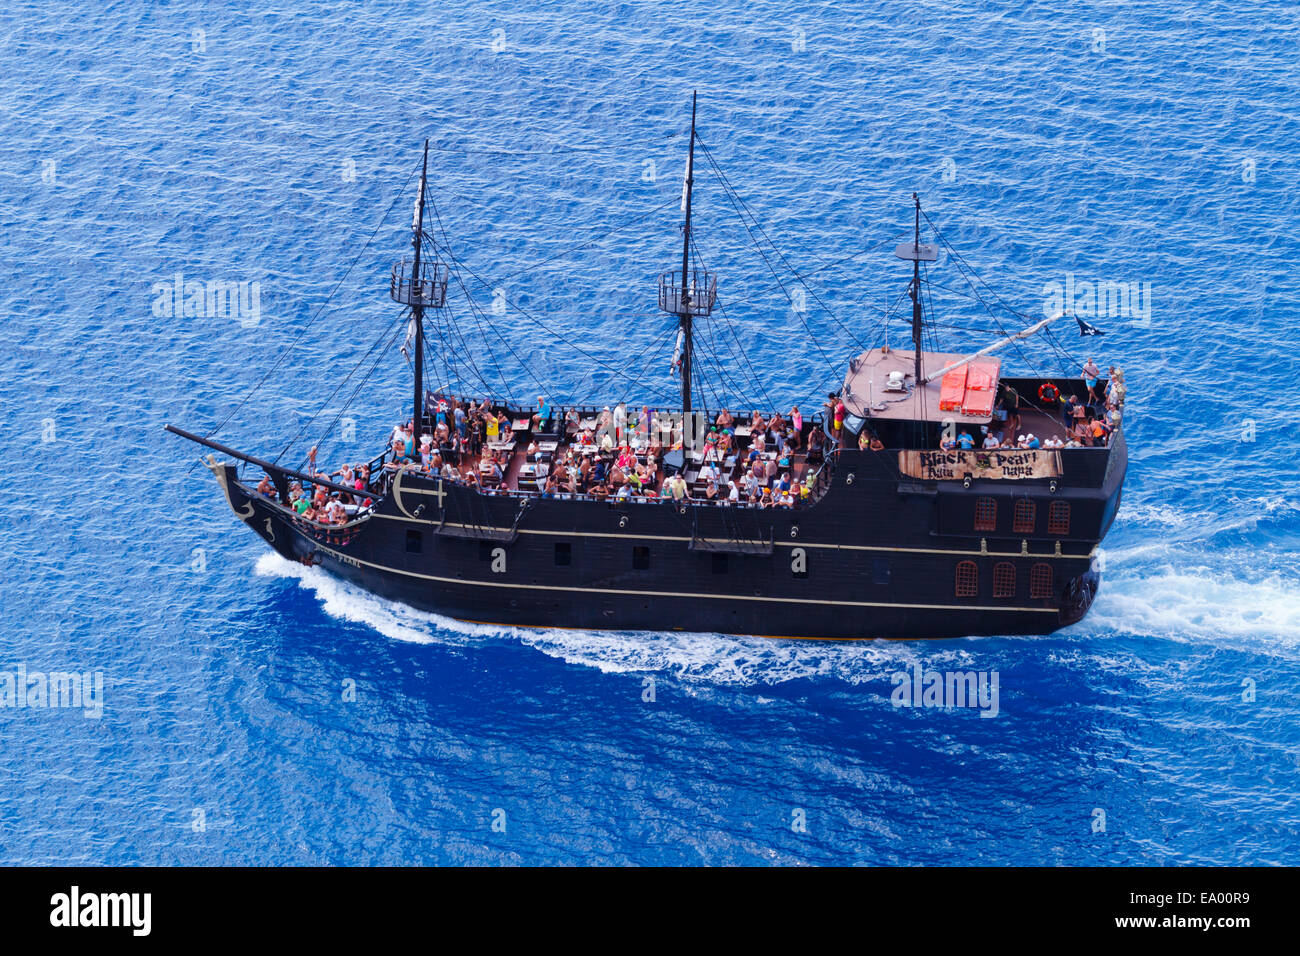 Le 'Black Pearl' partie bateau de croisière au Cap Greco à partir de ci-dessus. Ayia Napa, Chypre Banque D'Images